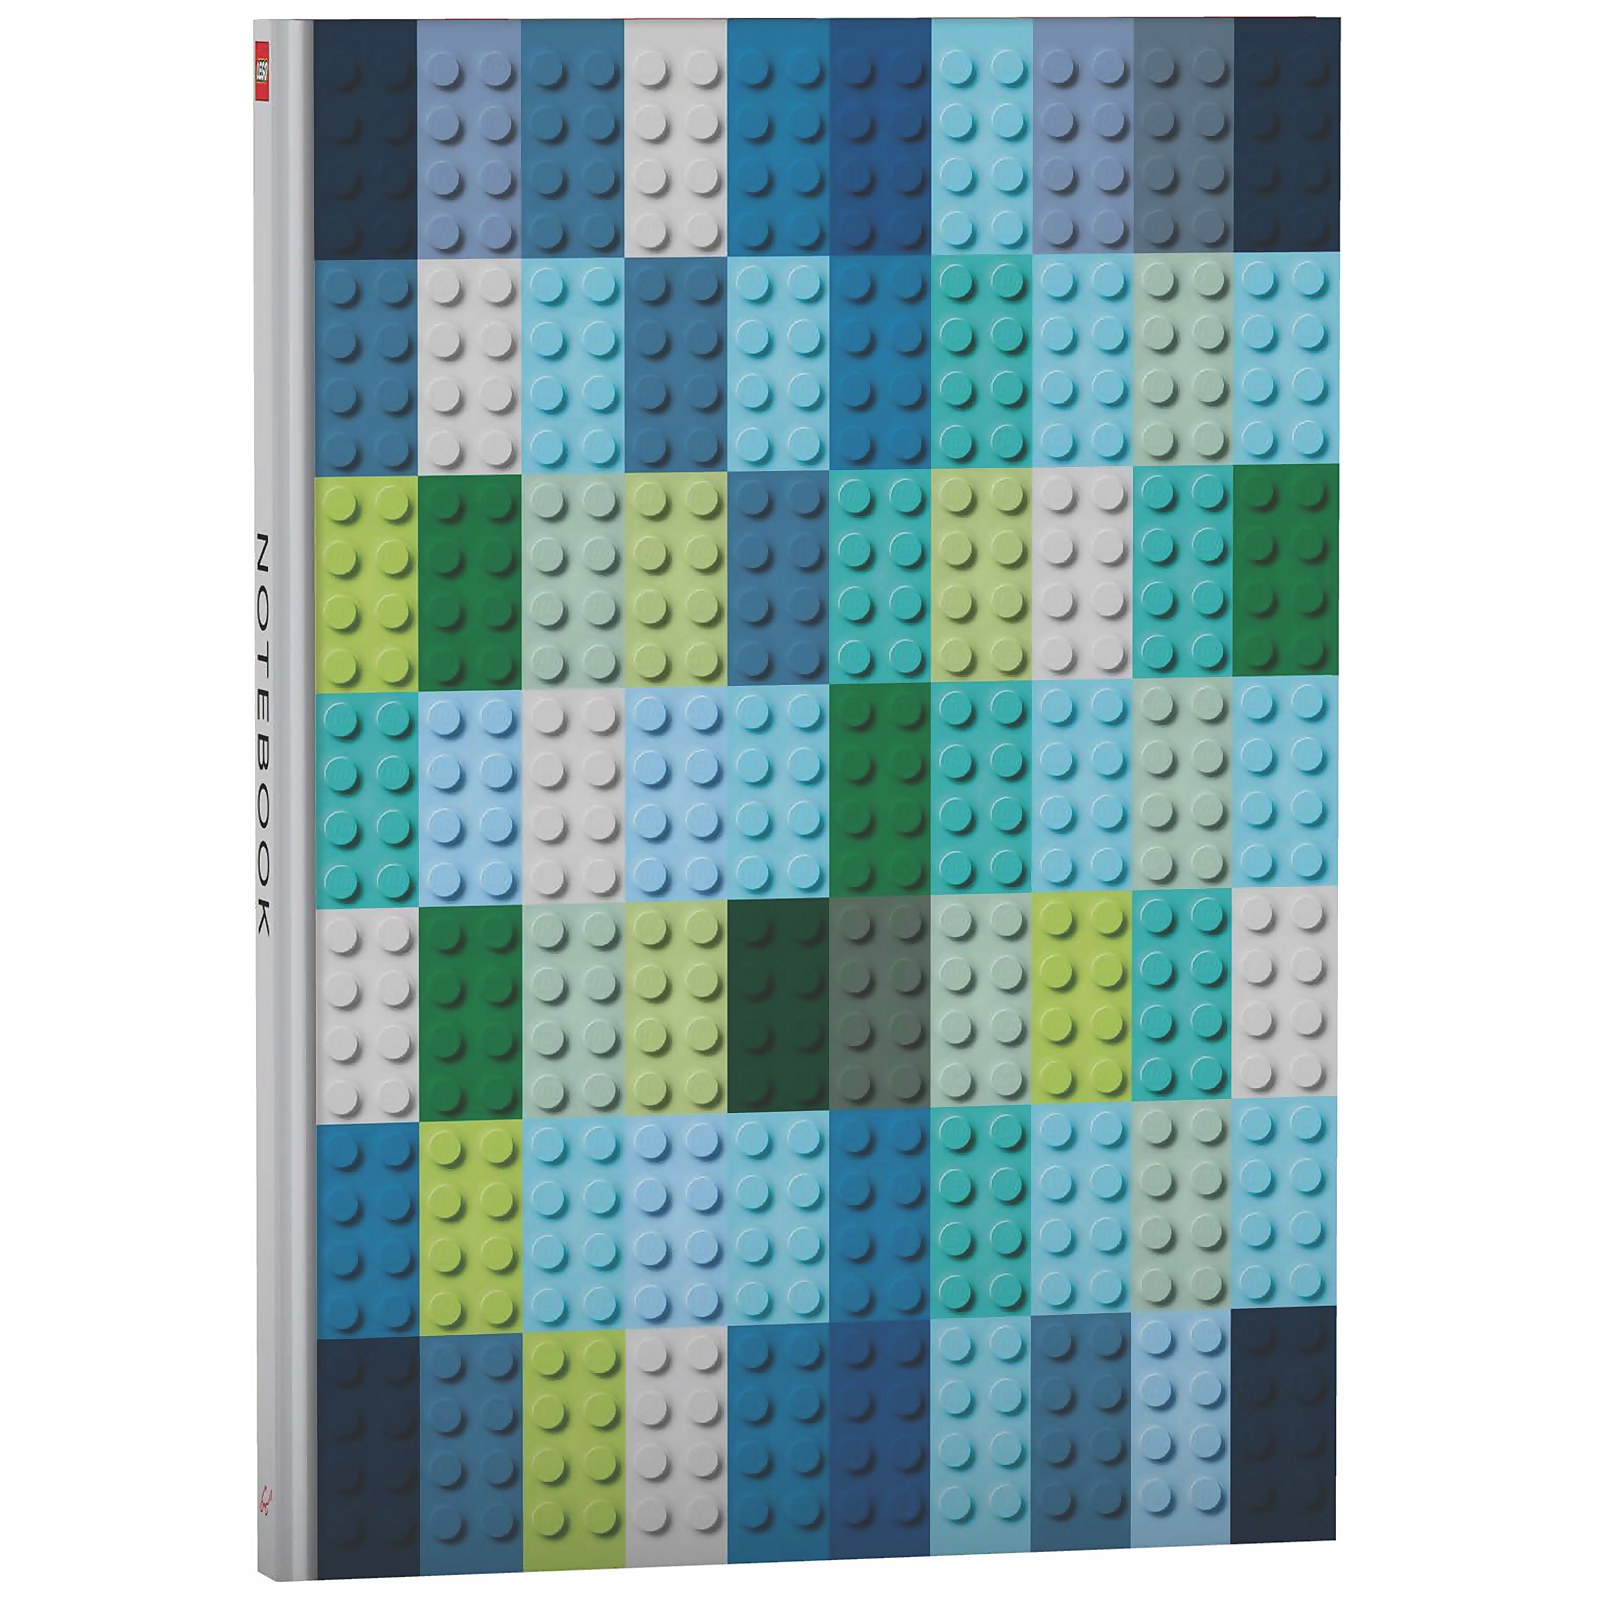 Image of LEGO Brick Notebook